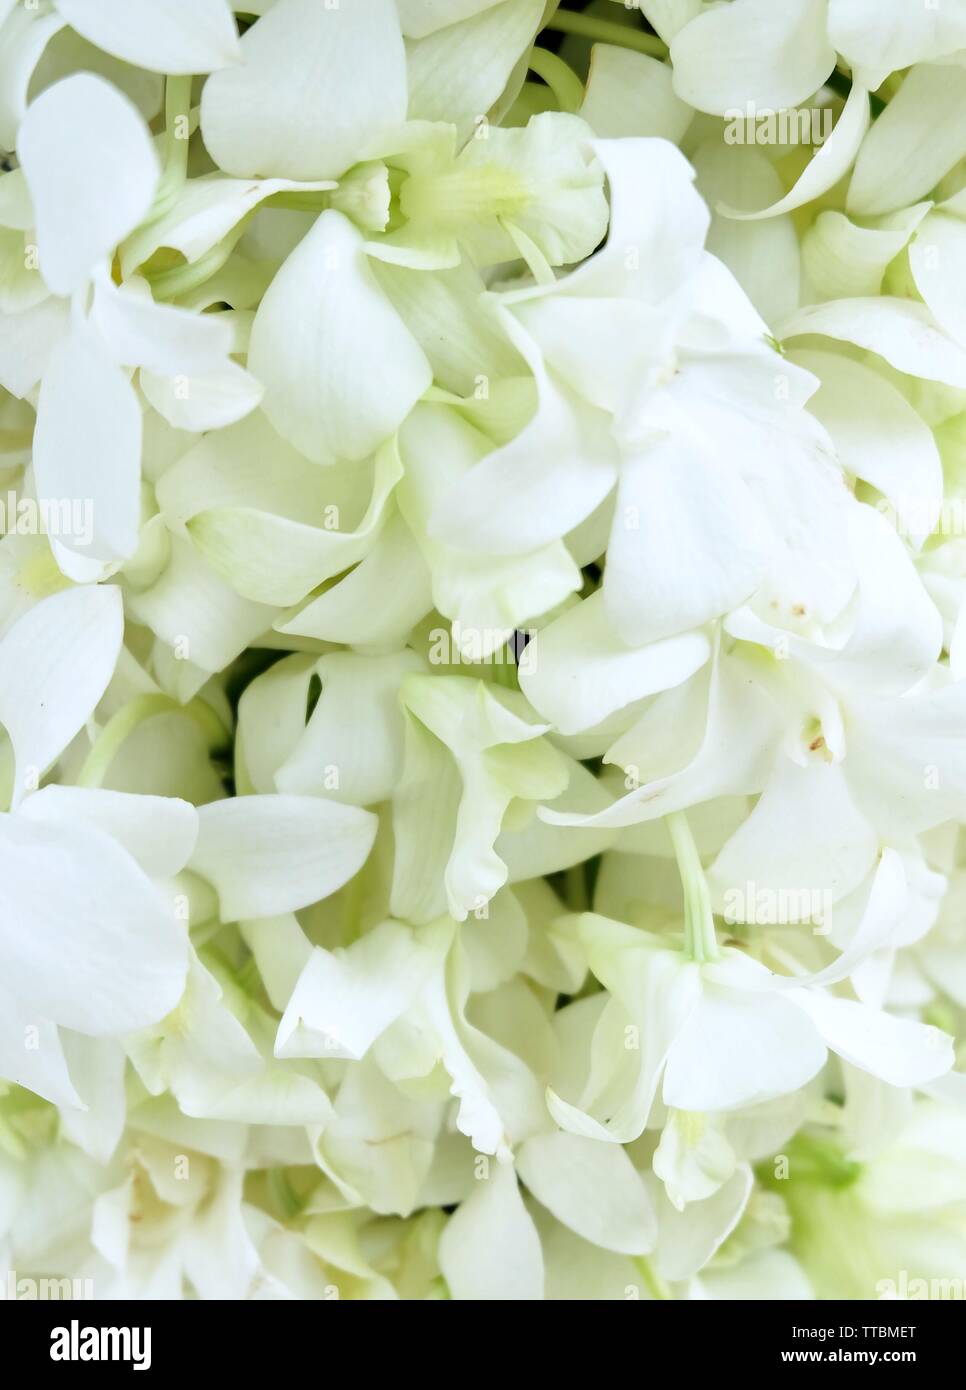 Flower and Plant, Beautiful White Phalaenopsis or Doritaenopsis Orchid Flower Streak For Garden Decor. Stock Photo